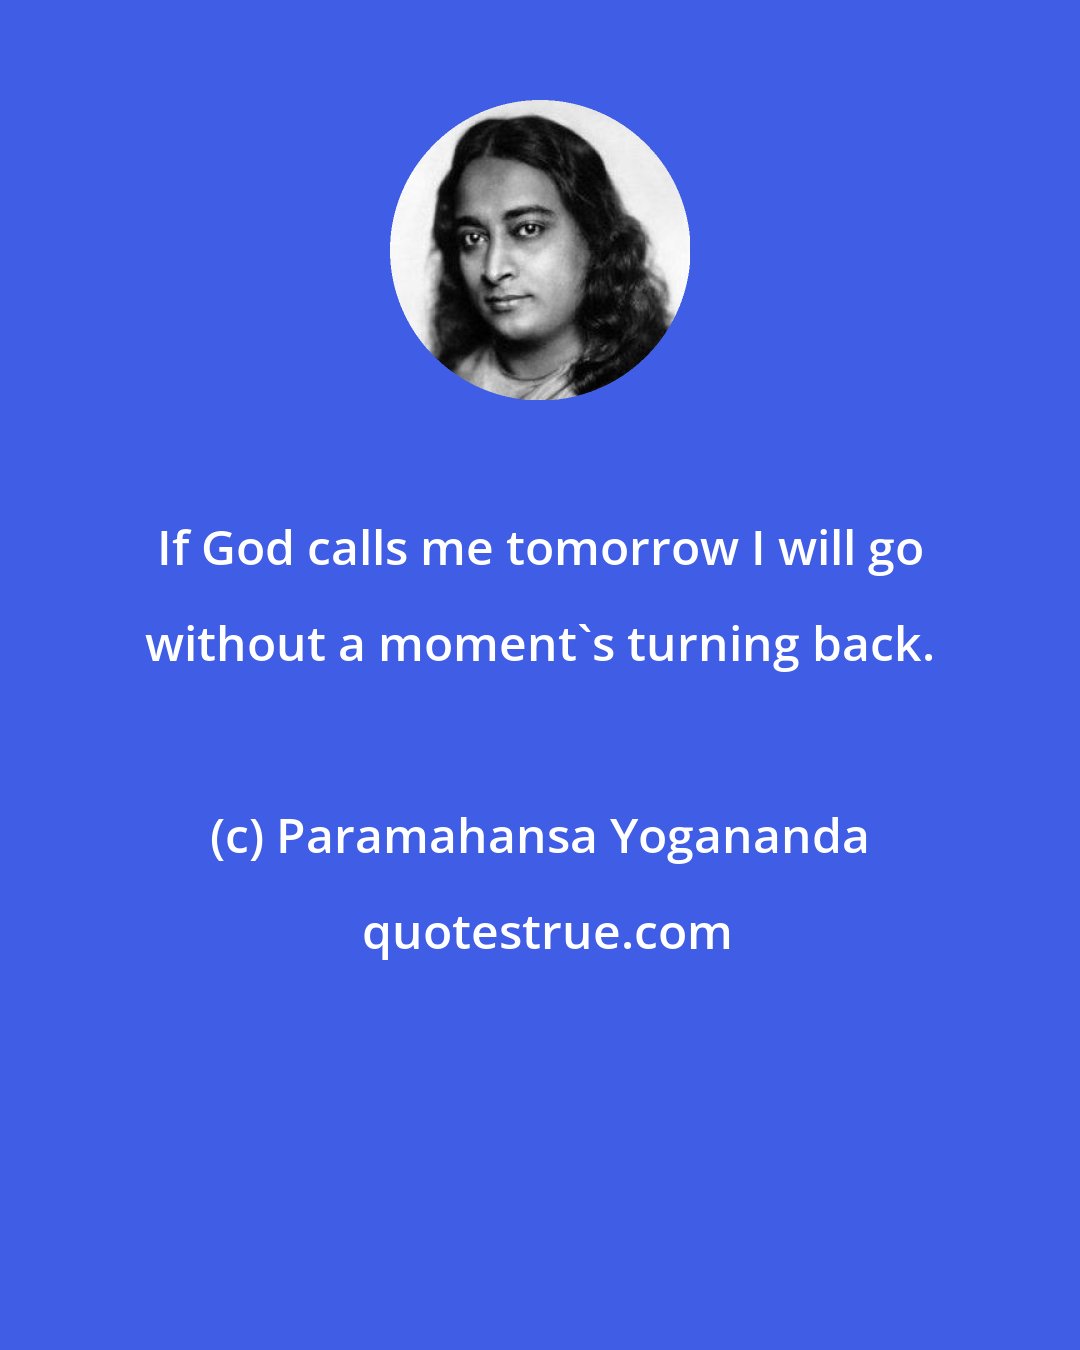 Paramahansa Yogananda: If God calls me tomorrow I will go without a moment's turning back.